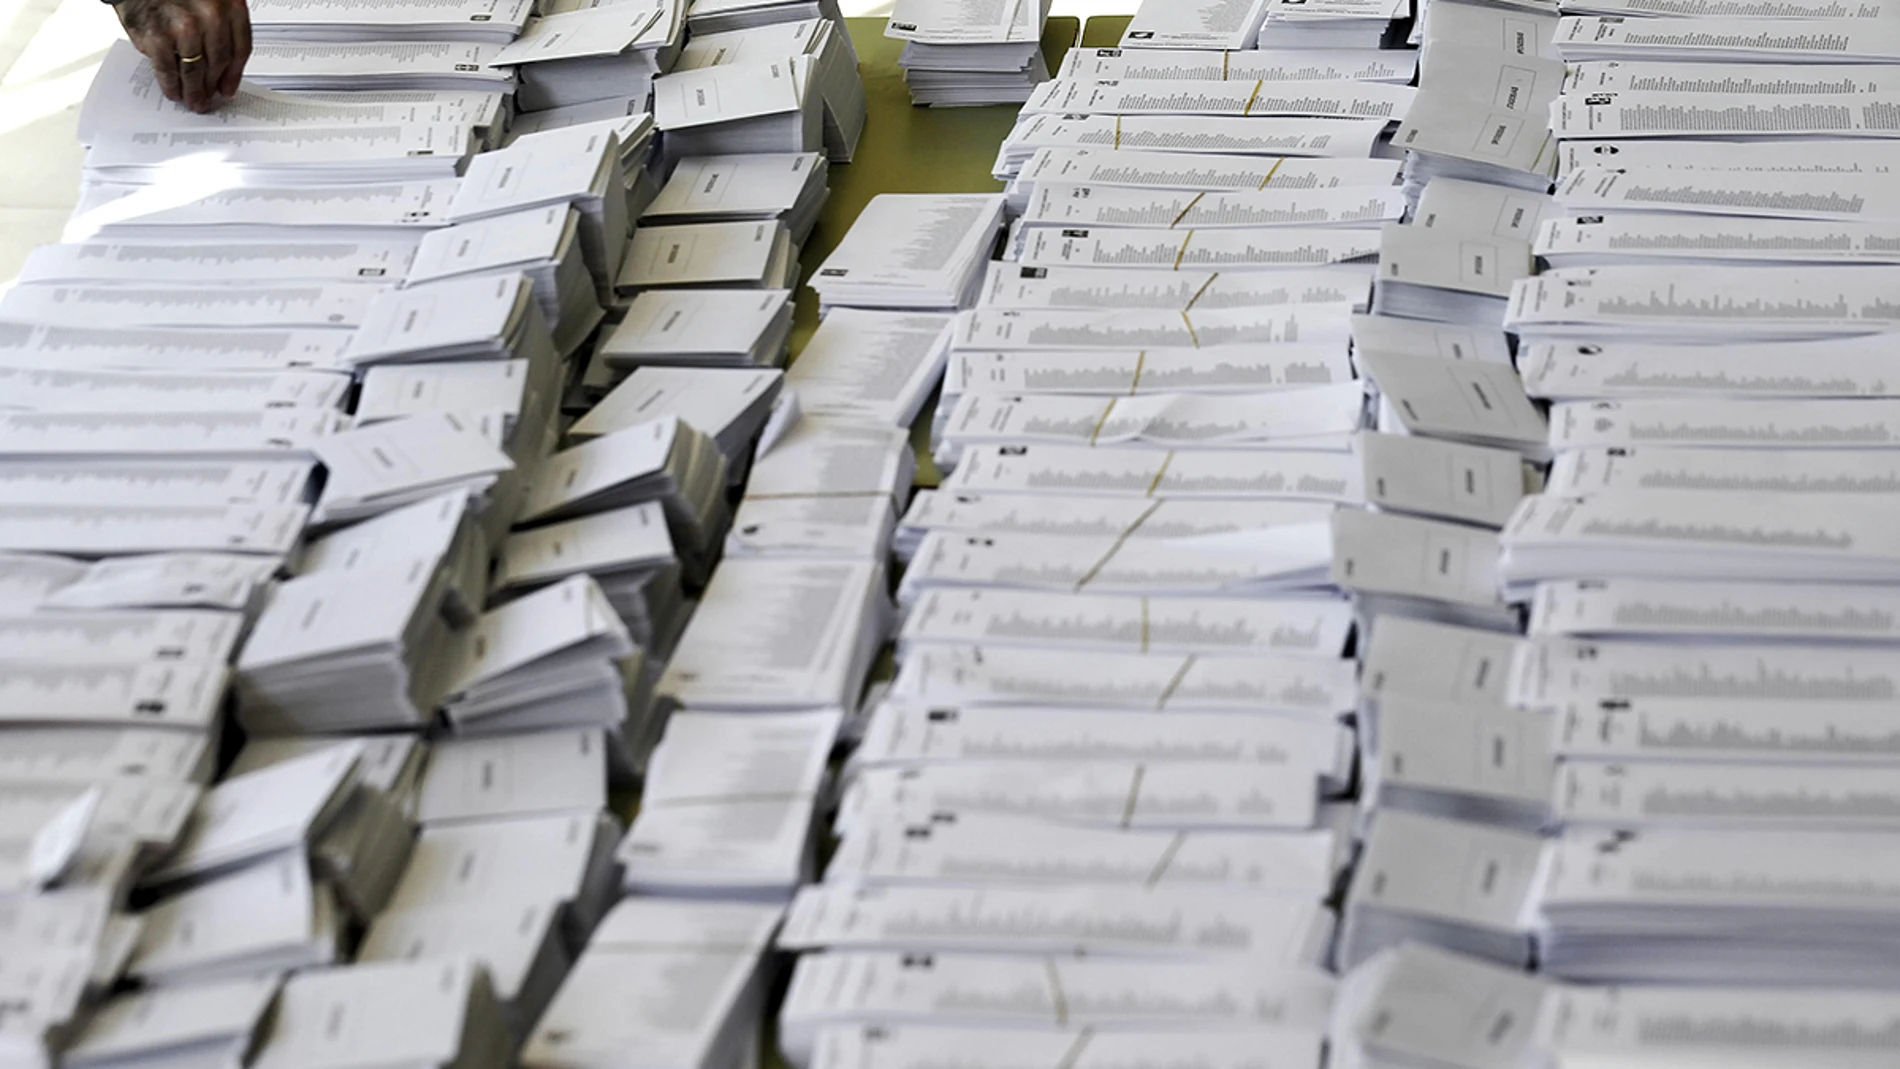 Elecciones Generales 2019: Papeletas electorales con las diferentes diferentes candidaturas preparadas 